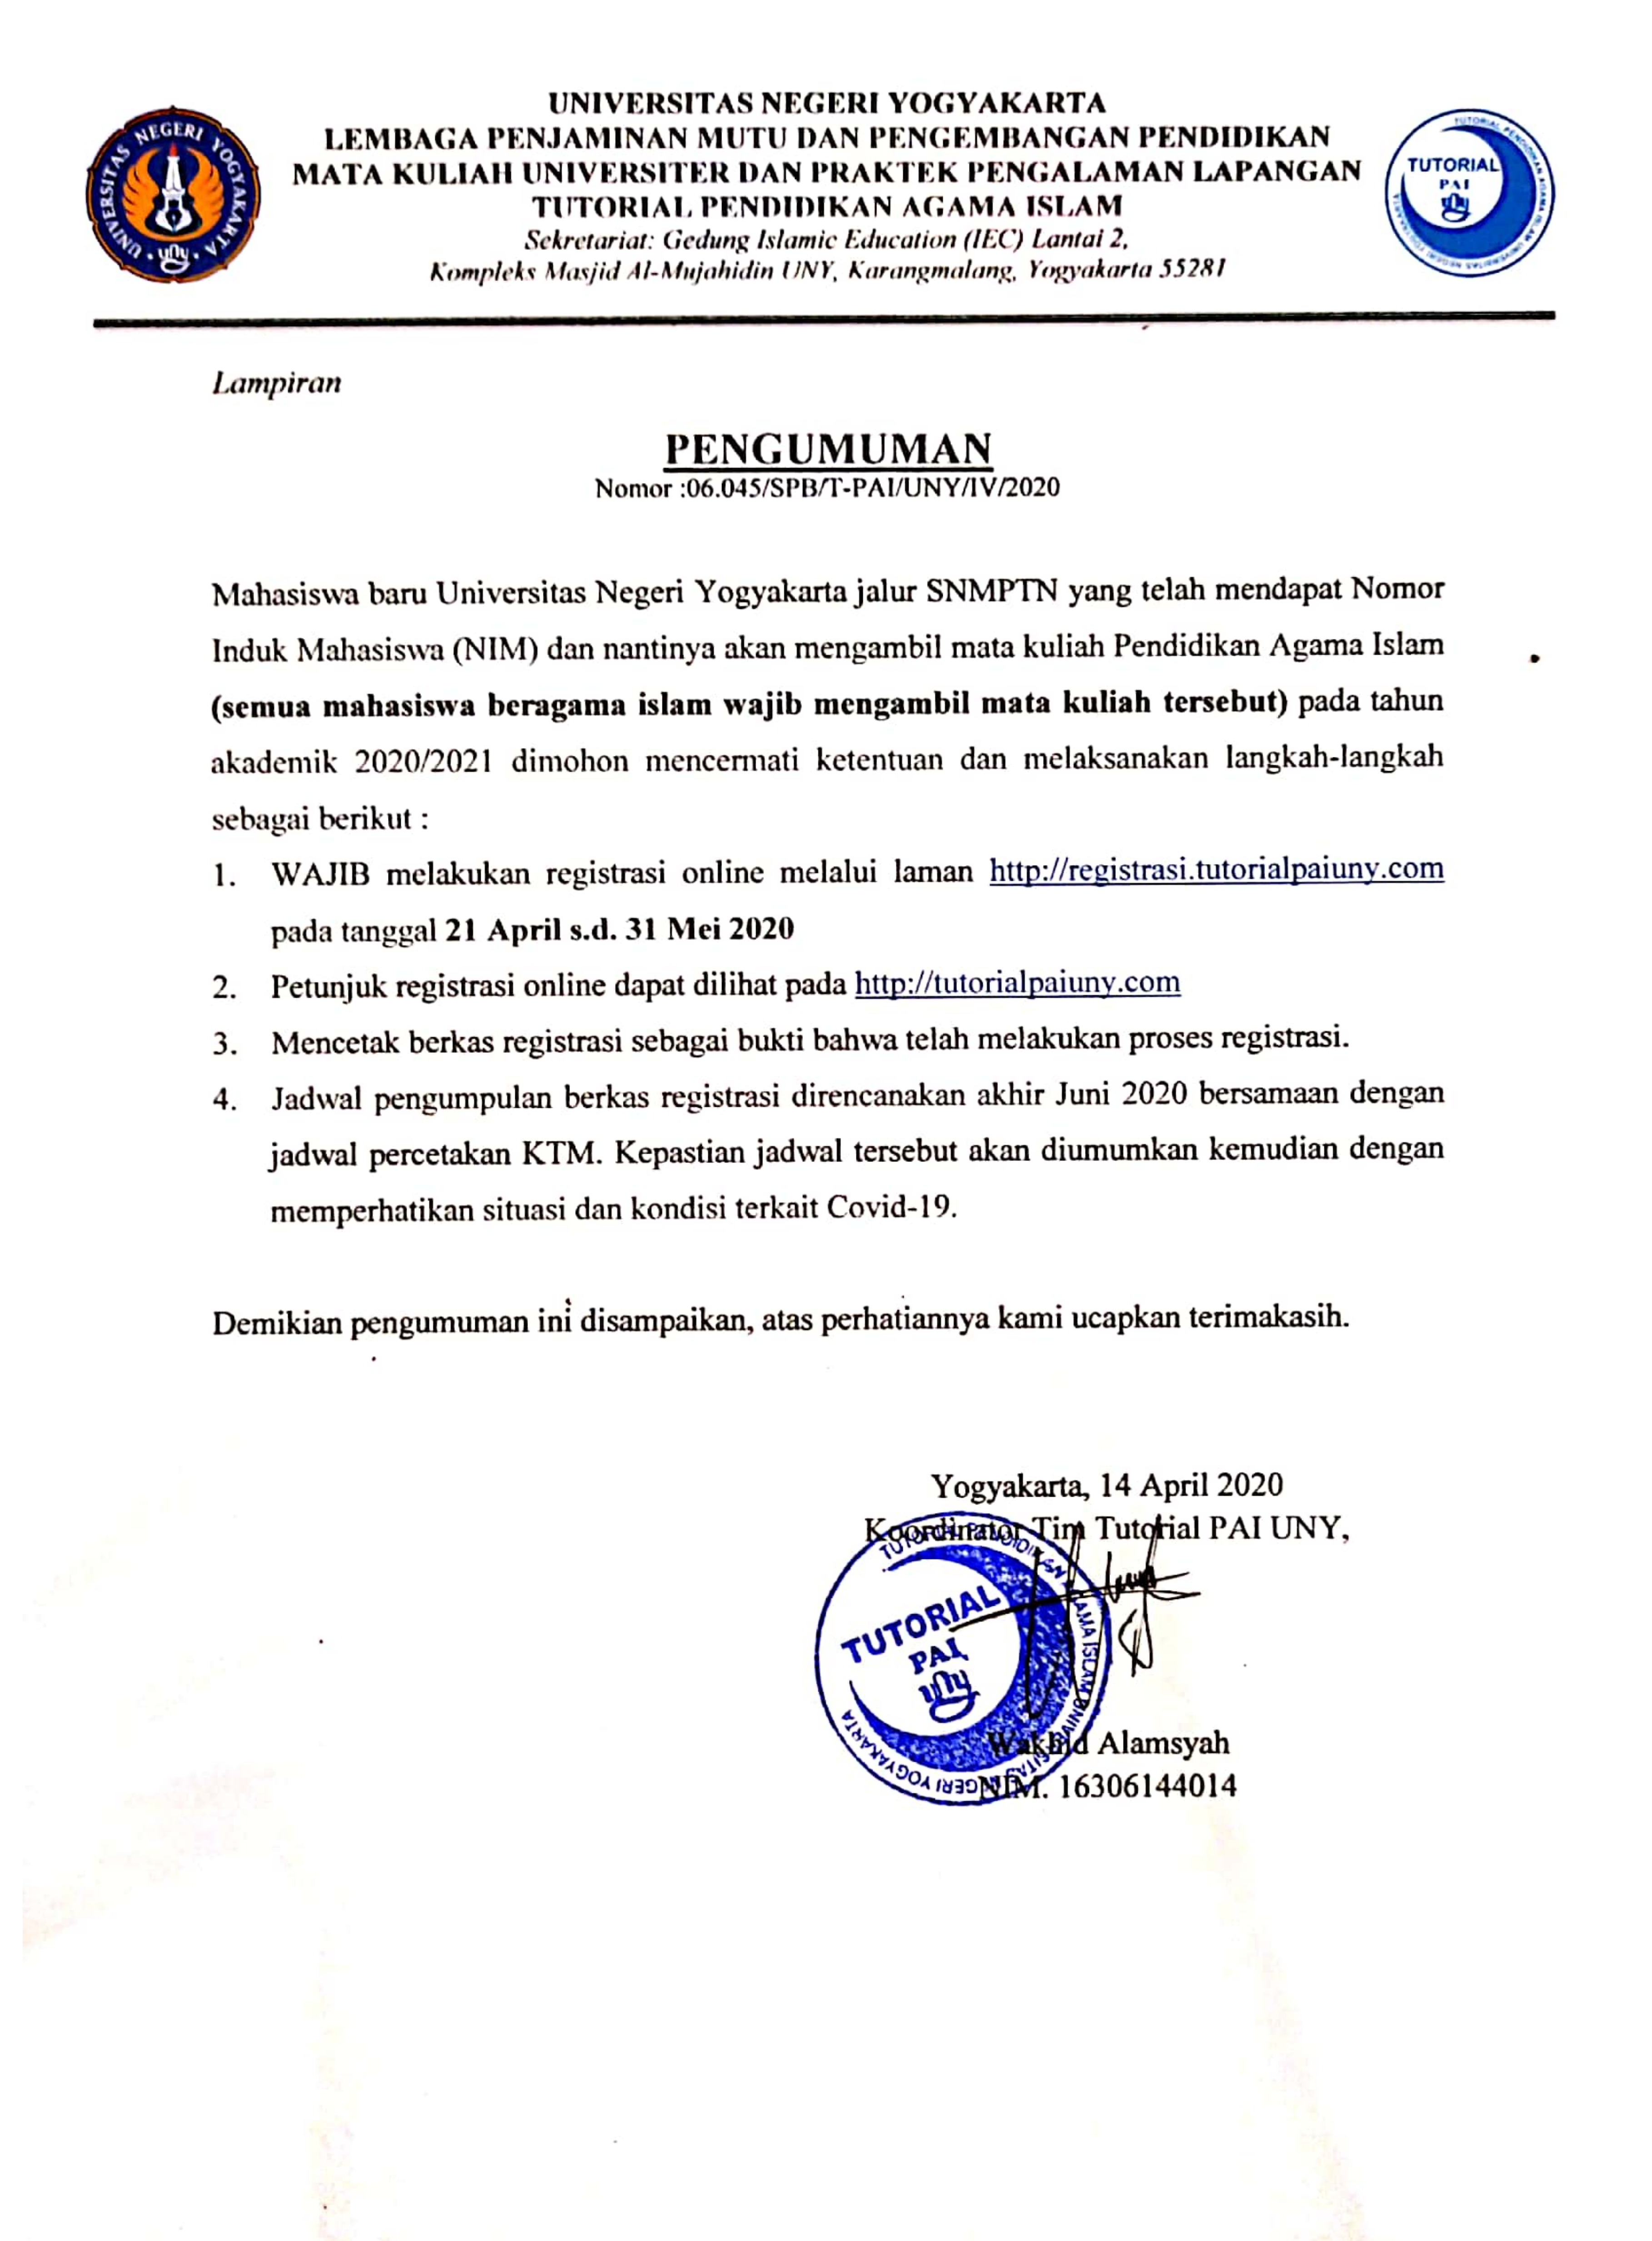 PENDAFTARAN TUTORIAL PENDIDIKAN AGAMA ISLAM BAGI MAHASISWA BARU JALUR SNMPTN 2020